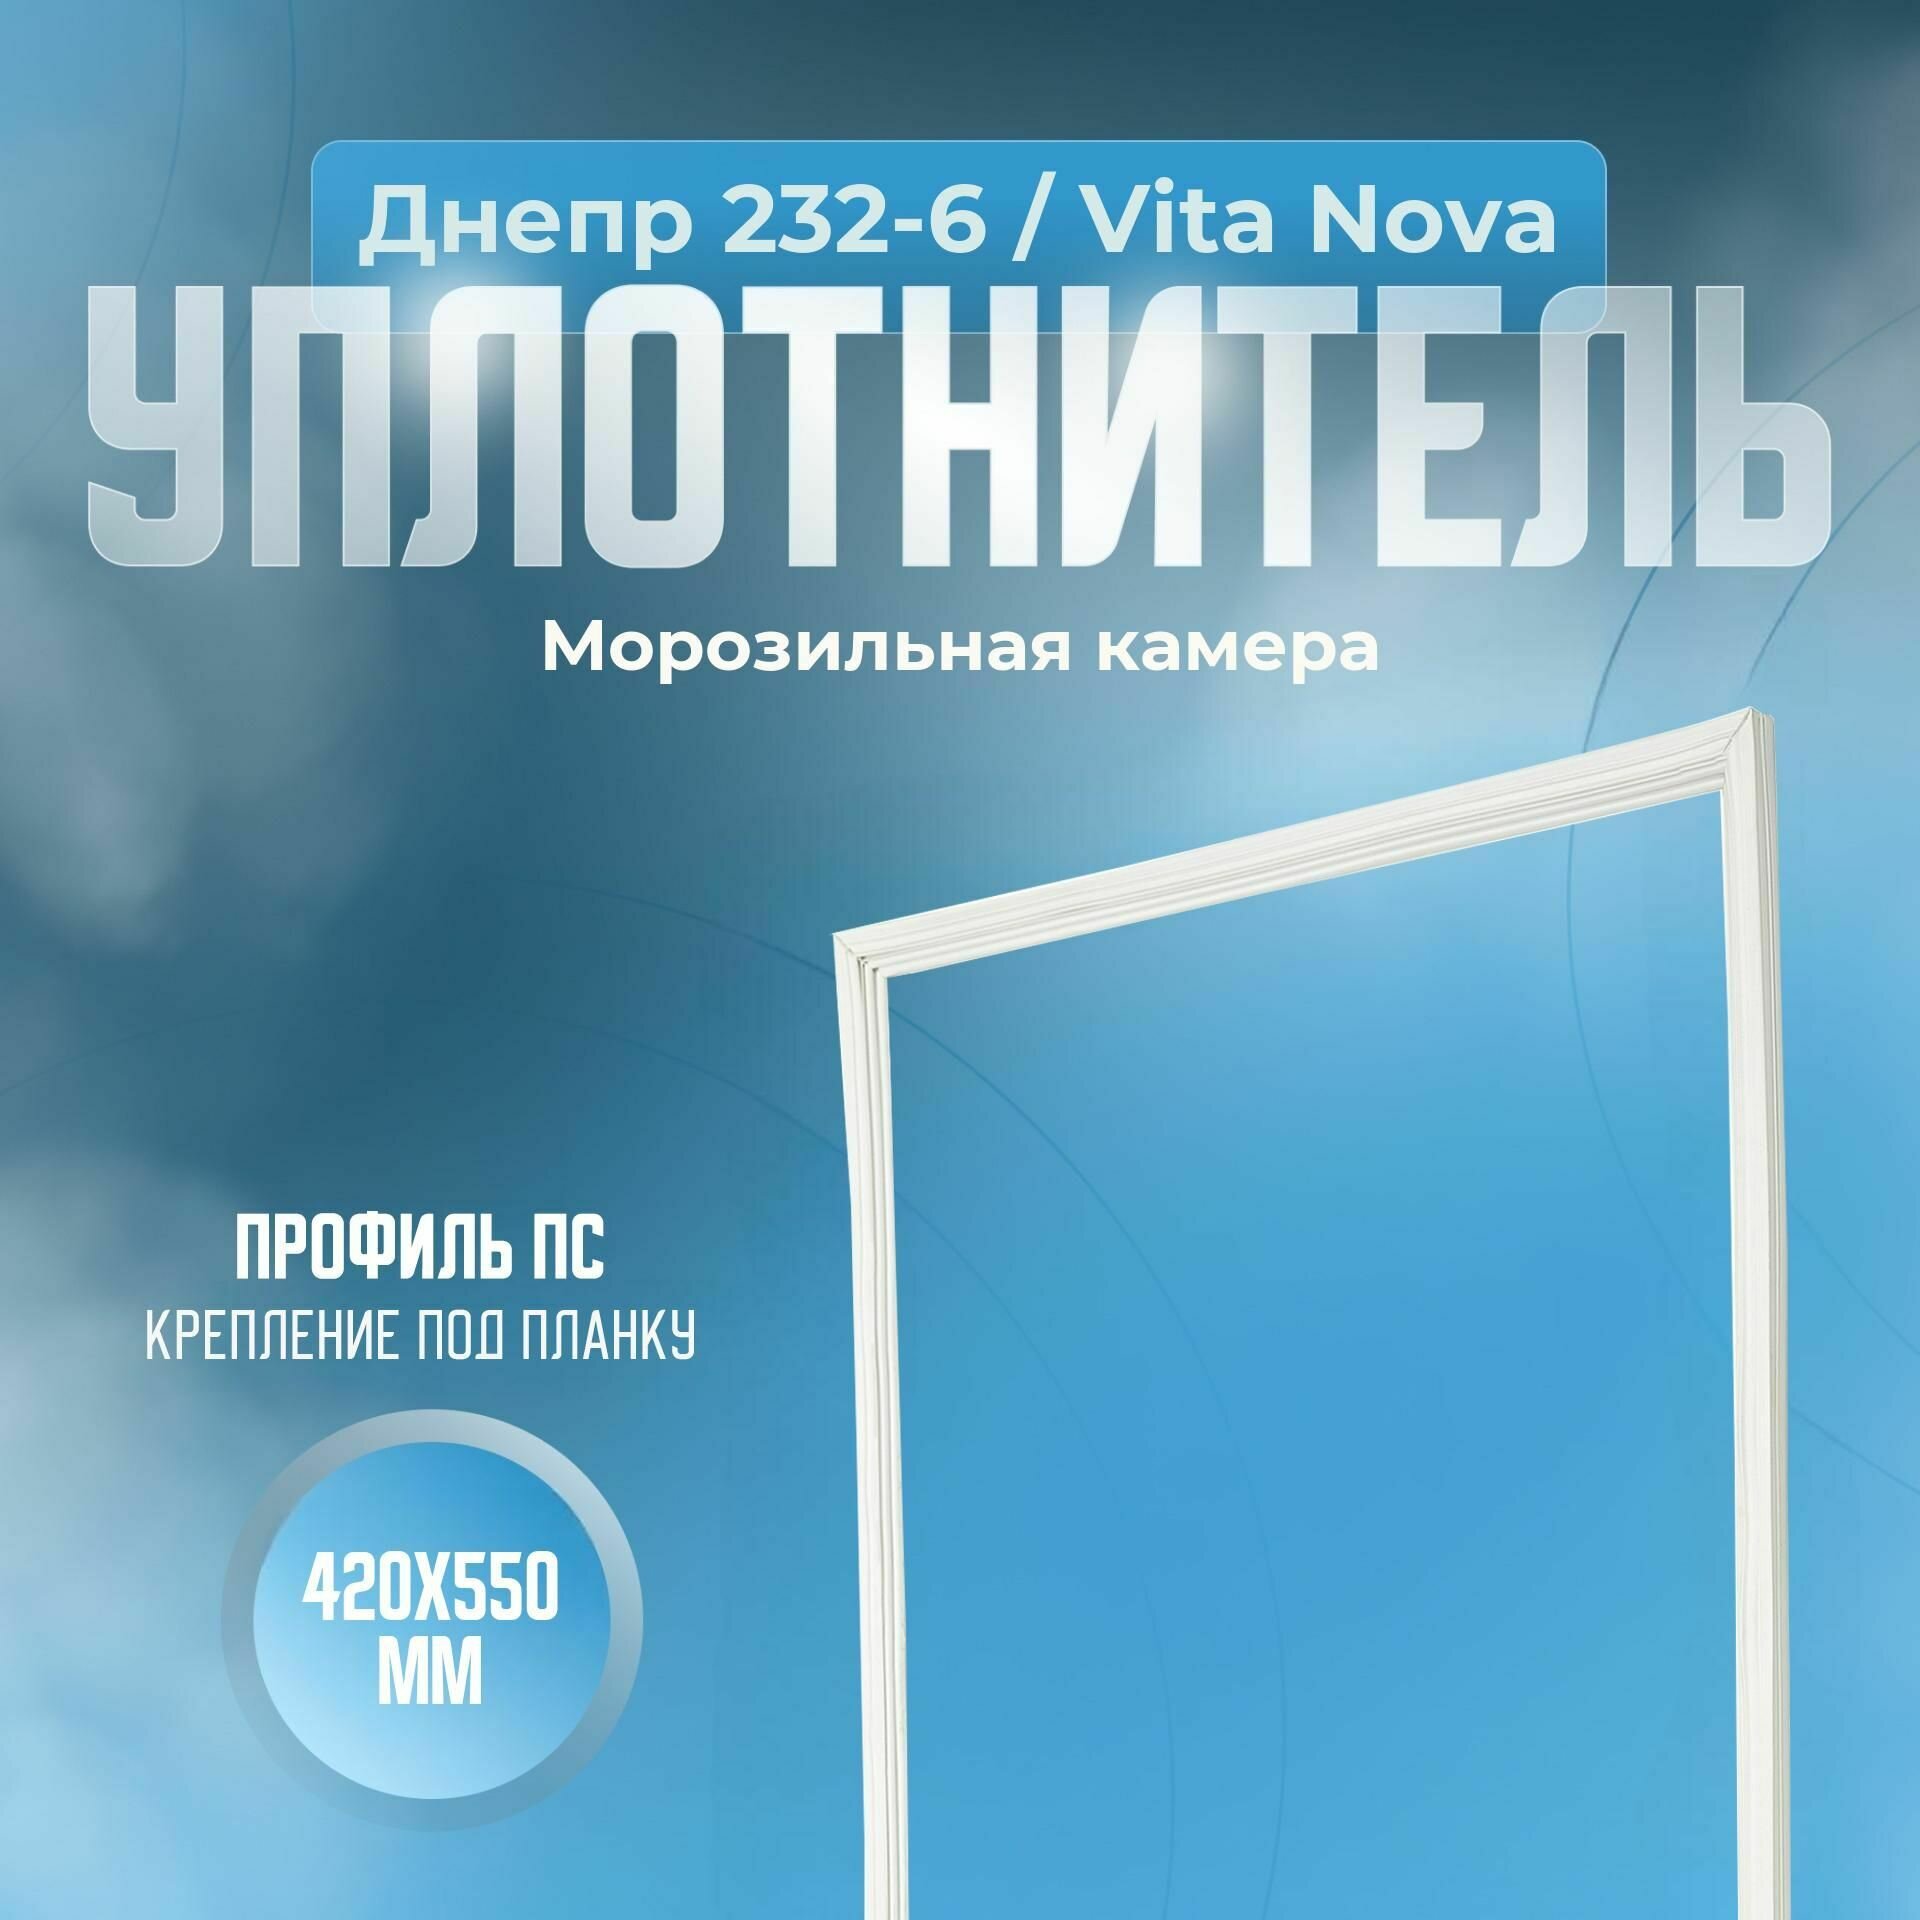 Уплотнитель Днепр 232-6 / Vita Nova. м. к, Размер - 420x550 мм. ПС